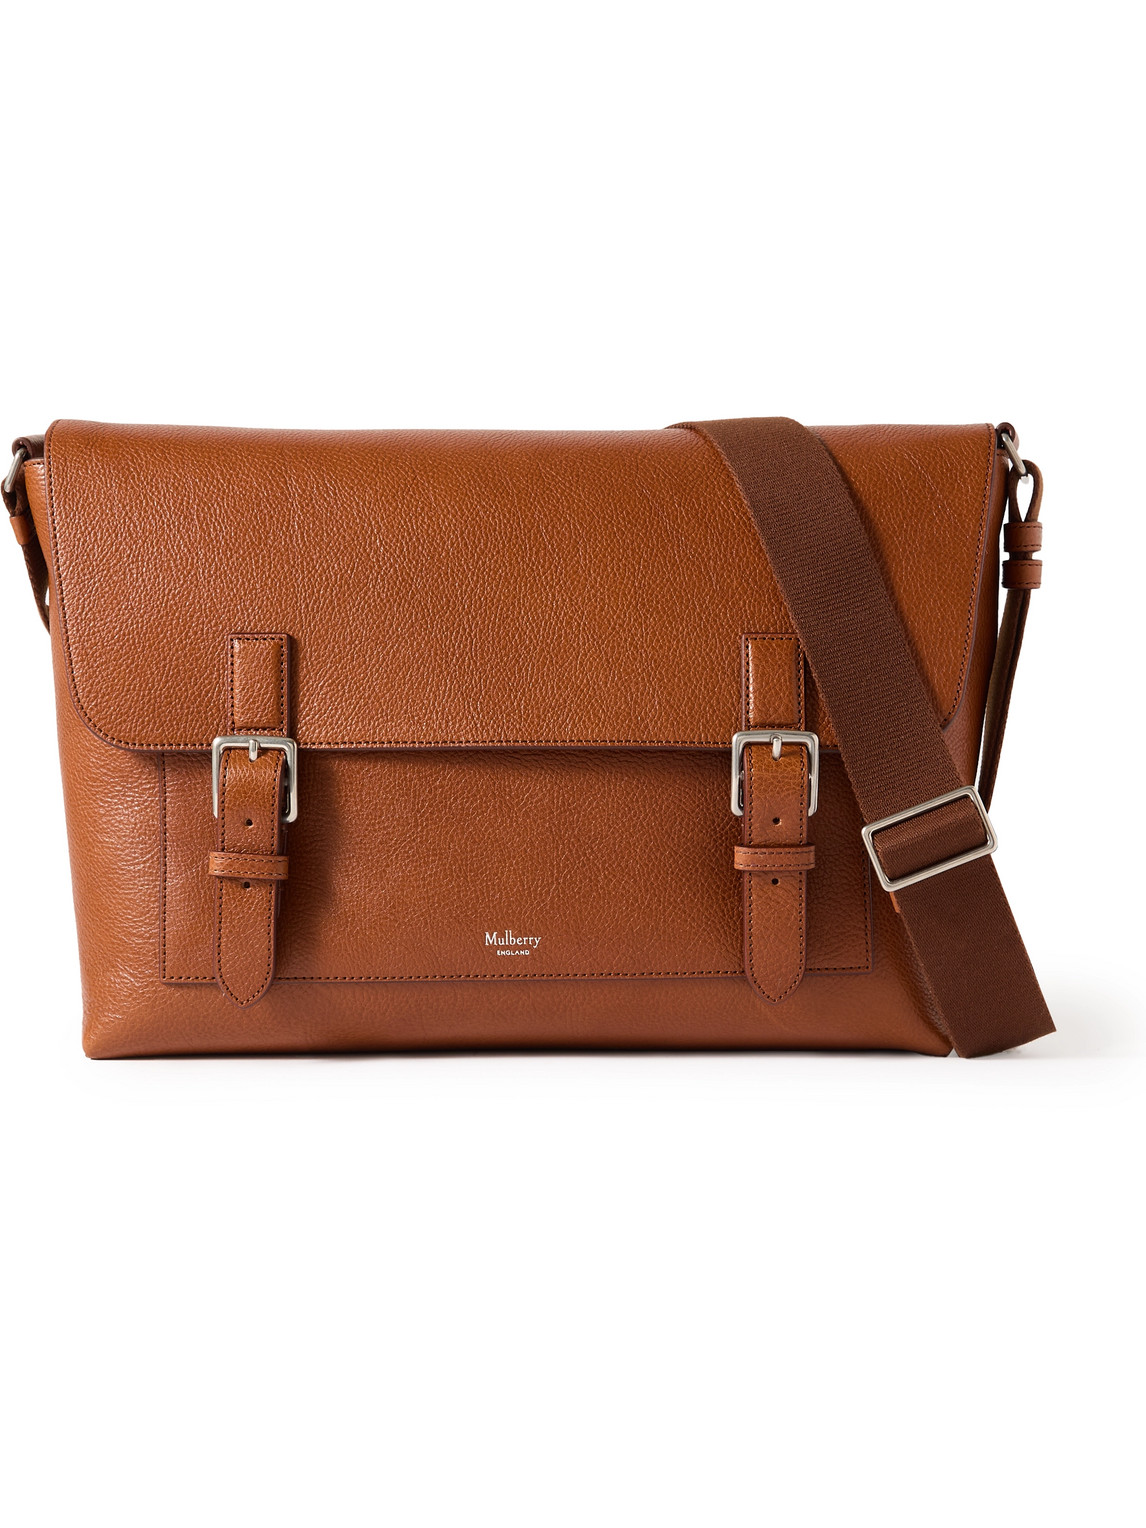 Mulberry Chiltern Full-grain Oak Legacy Nvt Leather Messenger Bag In Brown